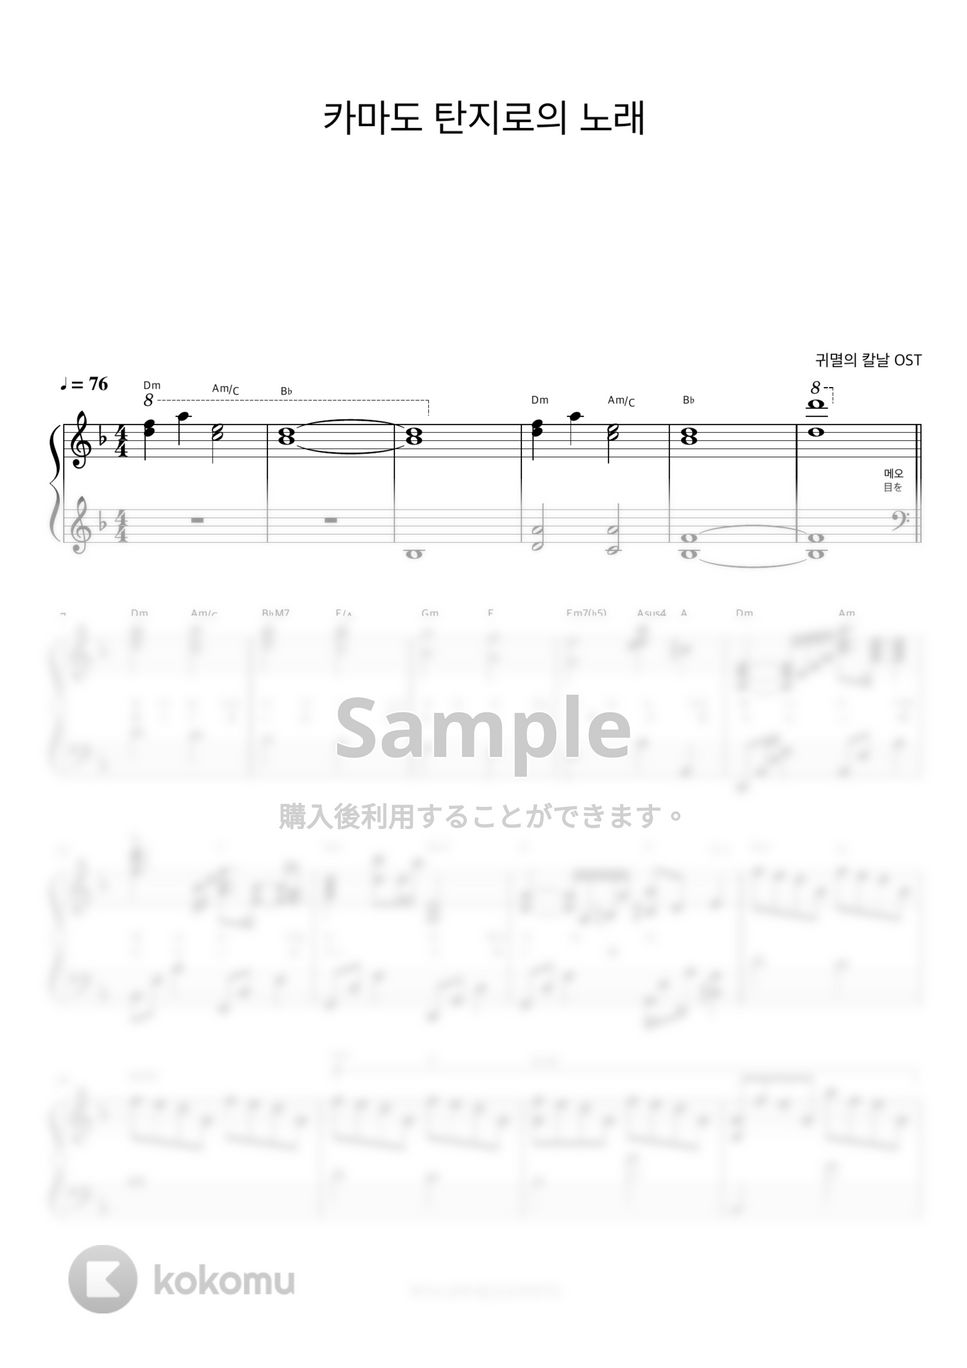 시이나 고 - 竈門炭治郎のうた (鬼滅の刃 OST 반주악보) by 피아노정류장